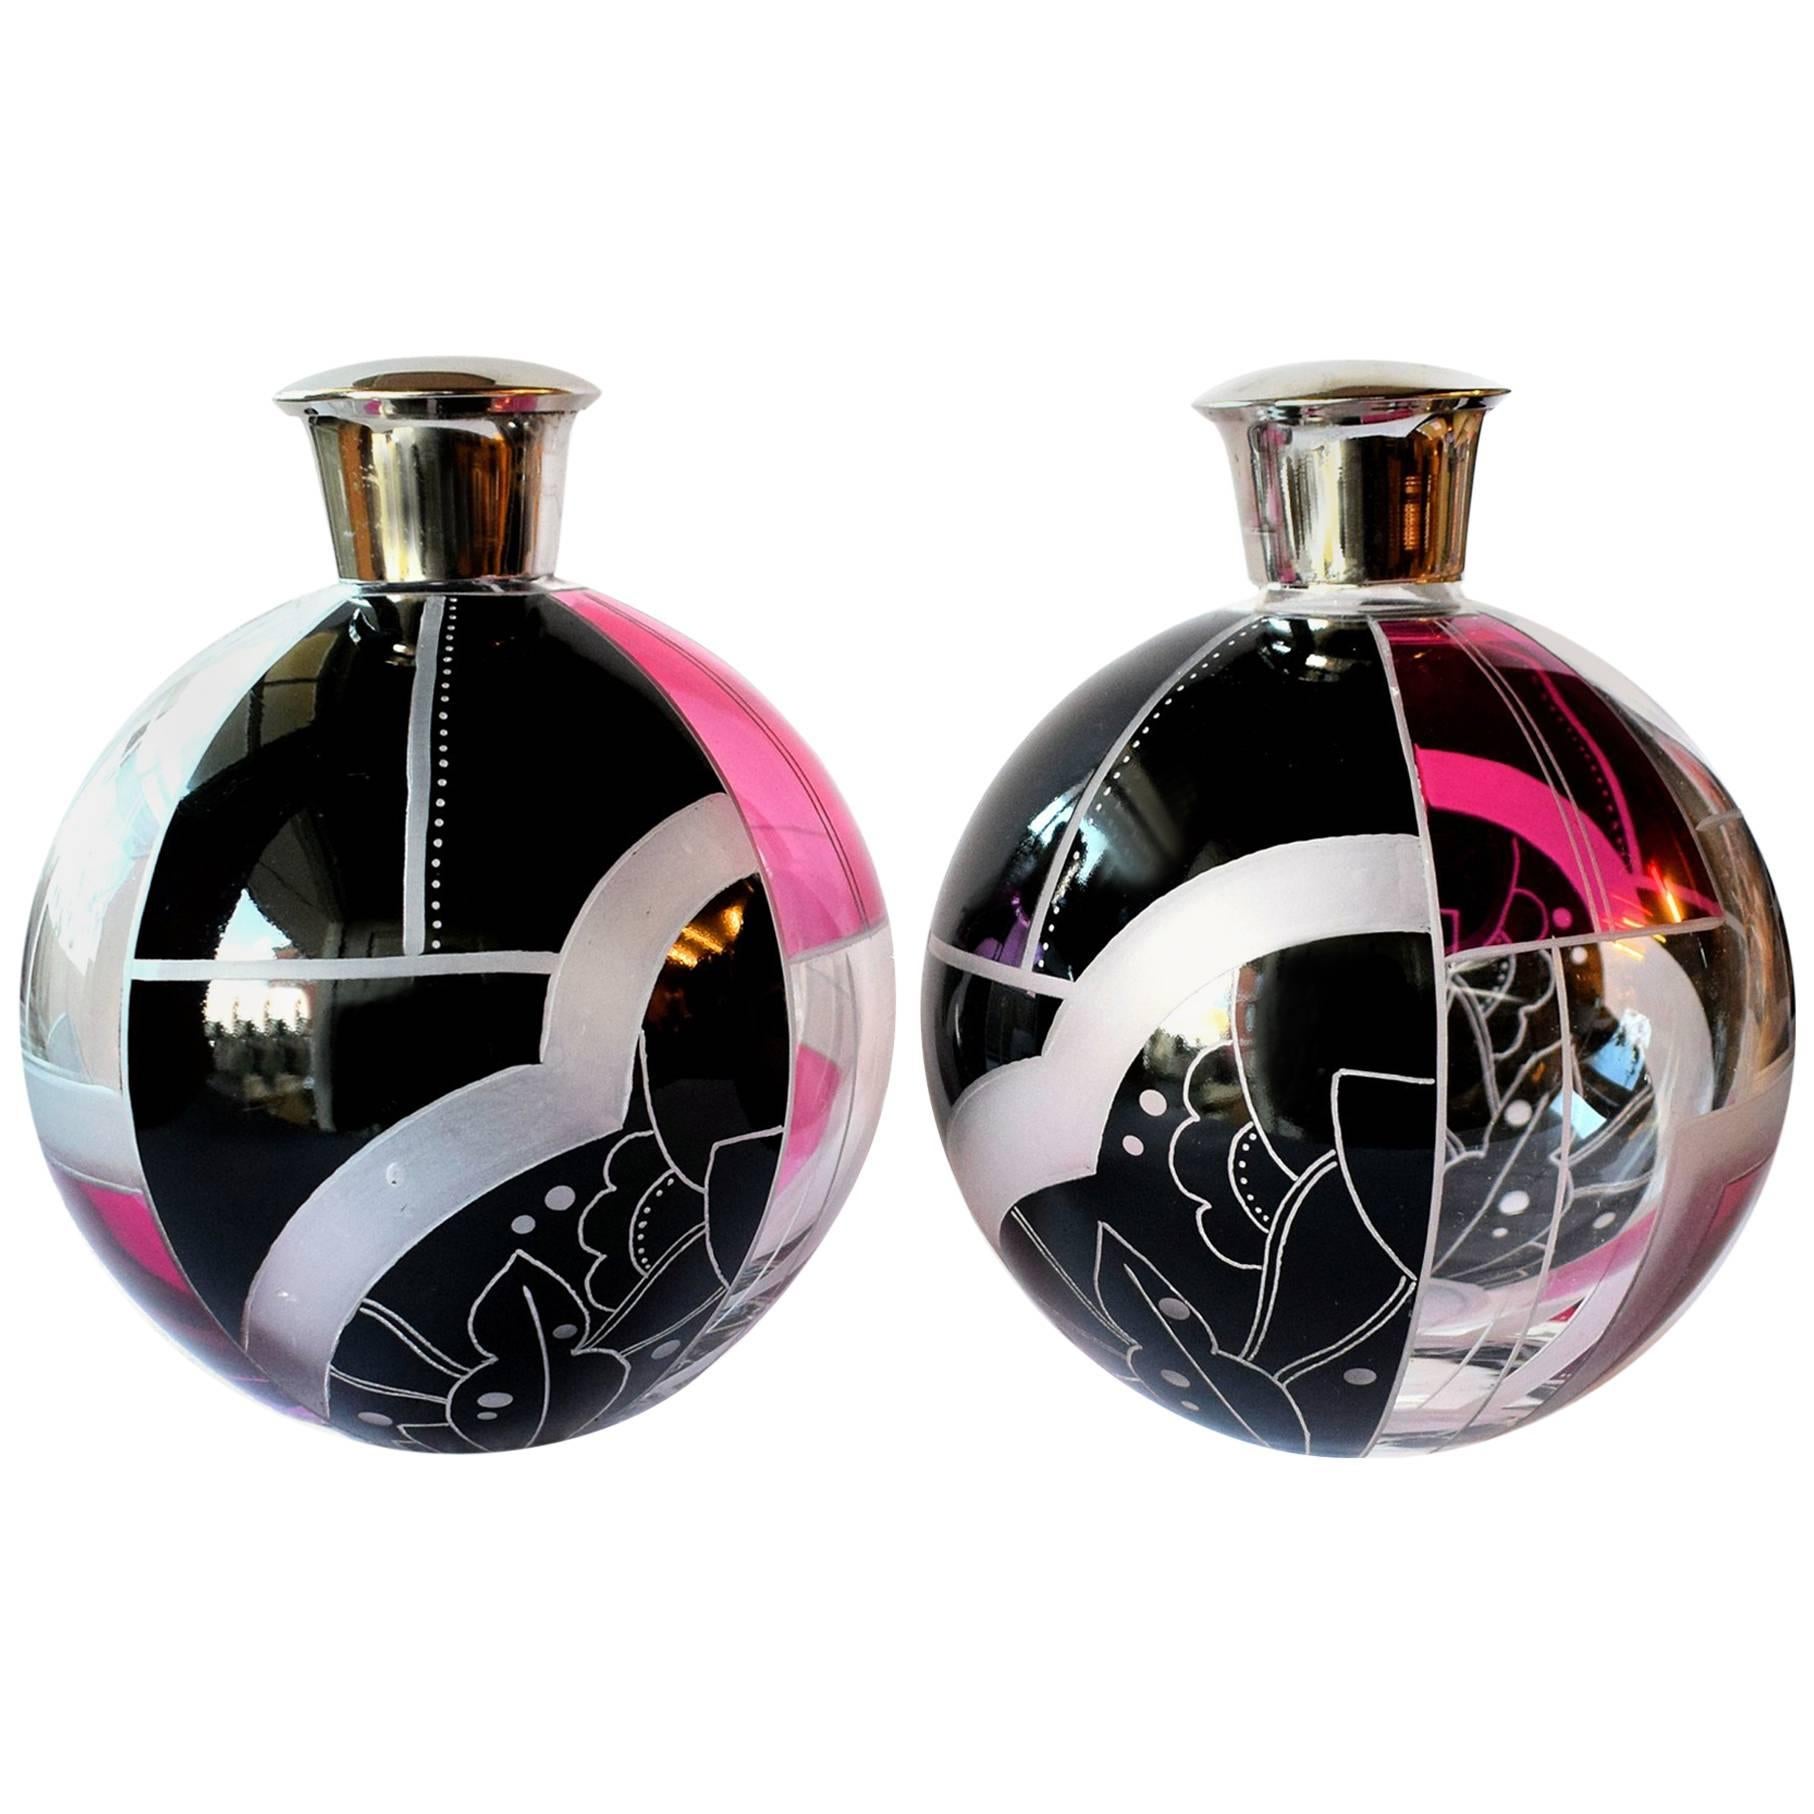 Beautiful Pair of Art Deco Perfume Bottles by Karl Palda